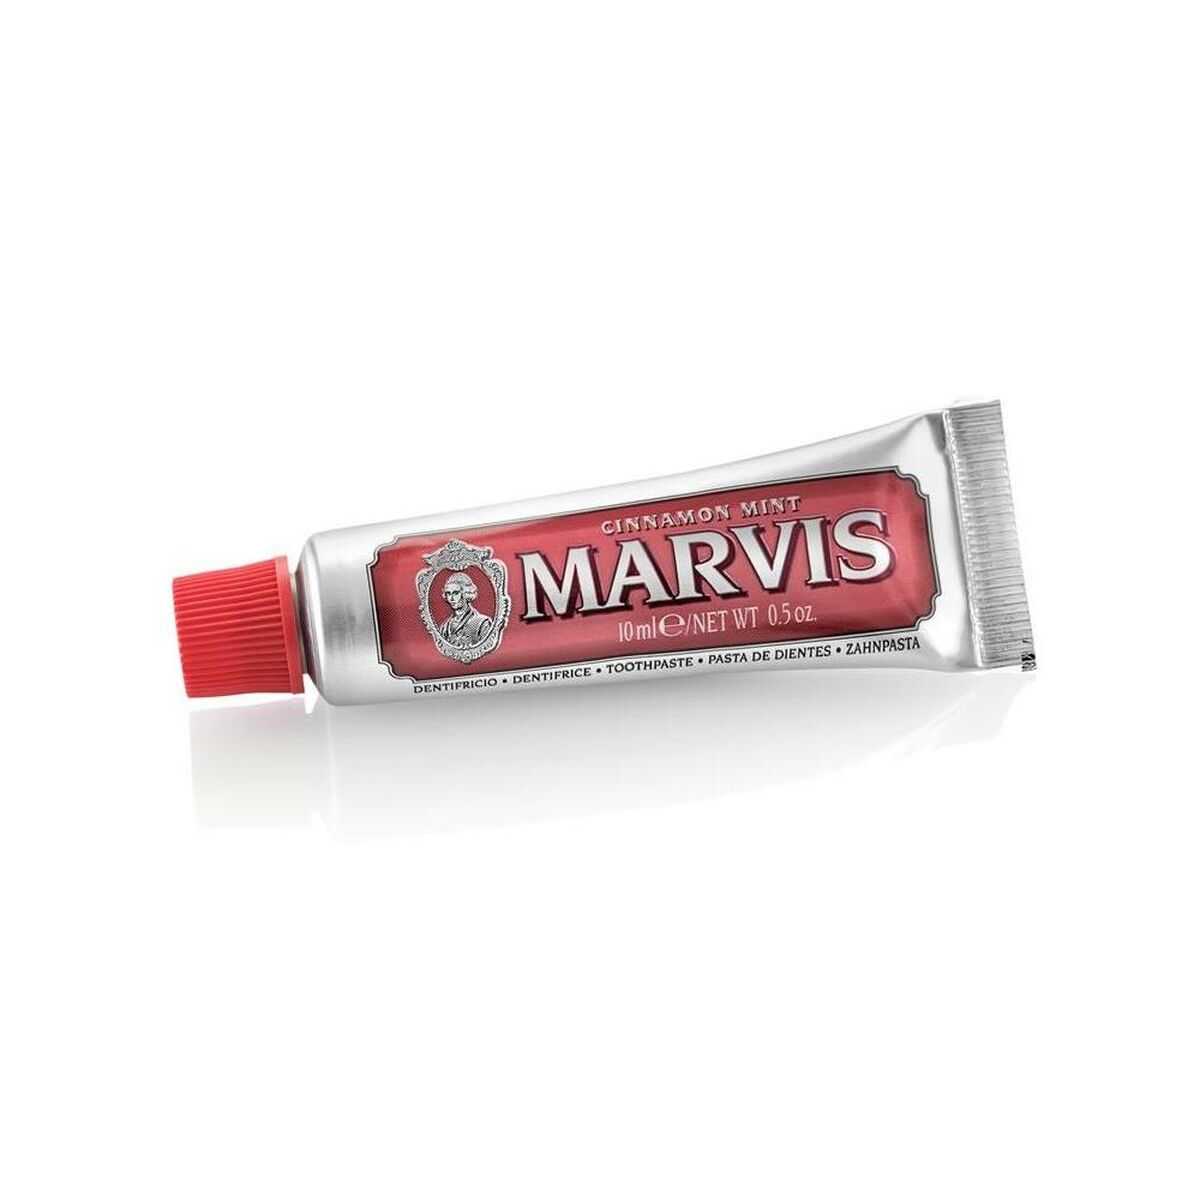 Toothpaste Marvis Mint 10 ml Cinnamon